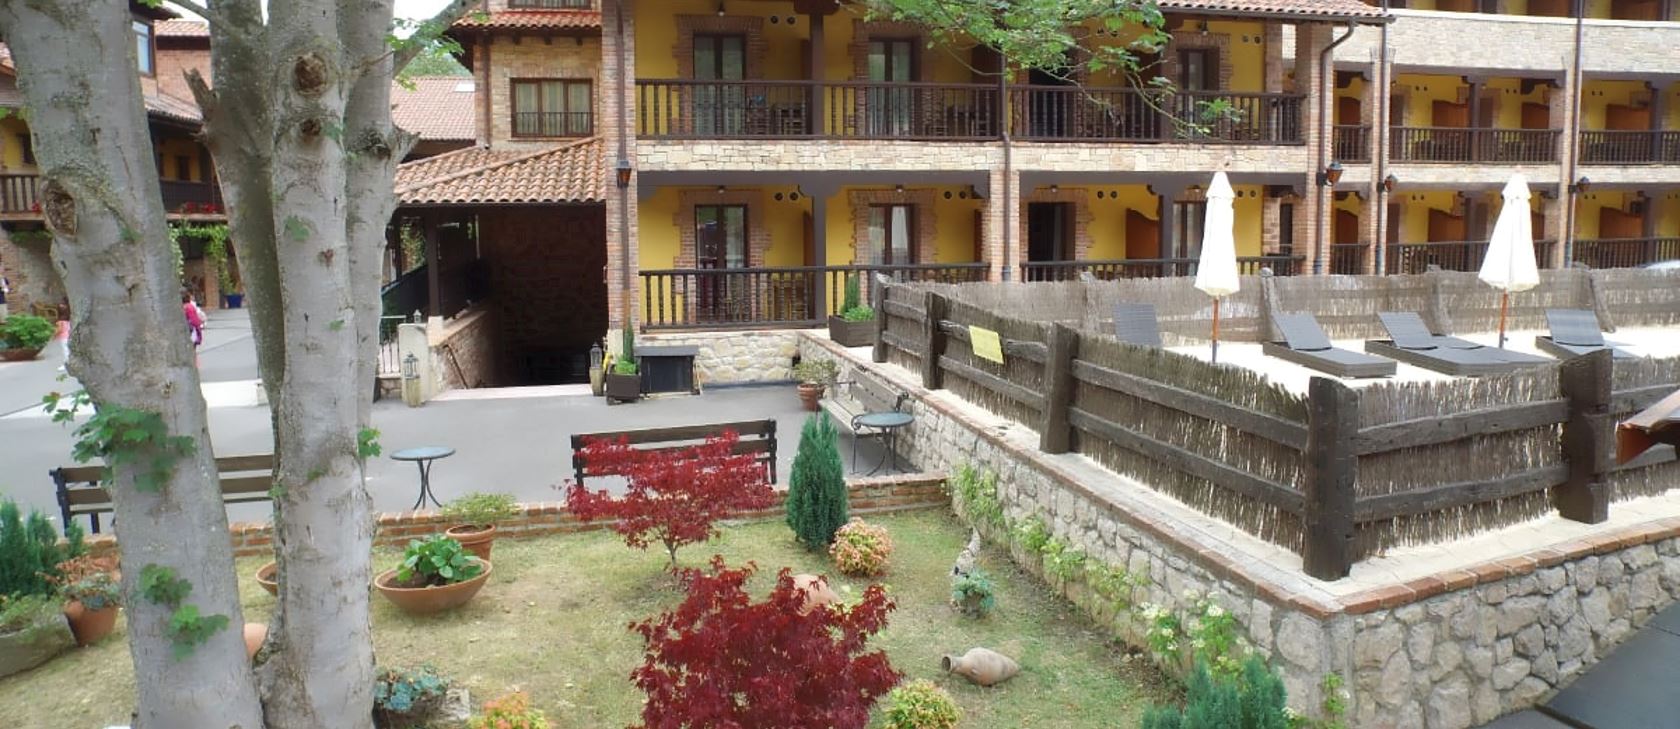 Oferta hotel rural en Asturias (Cangas De Onis - ASTURIAS)